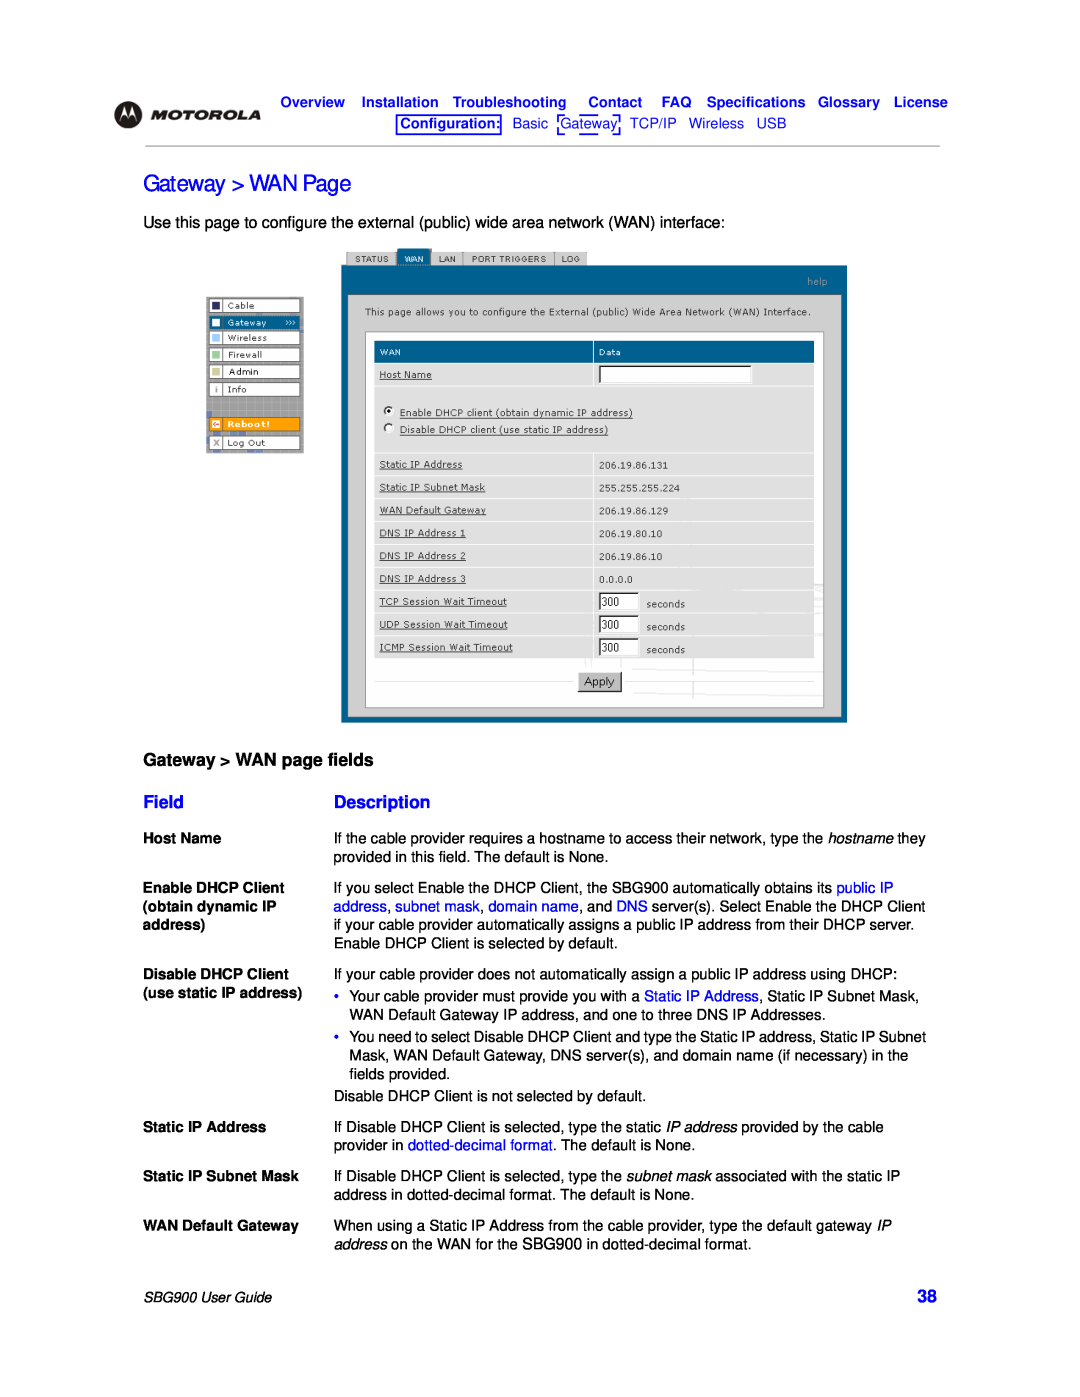 Motorola manual Gateway WAN Page, Gateway WAN page fields, Field, Description, SBG900 User Guide 